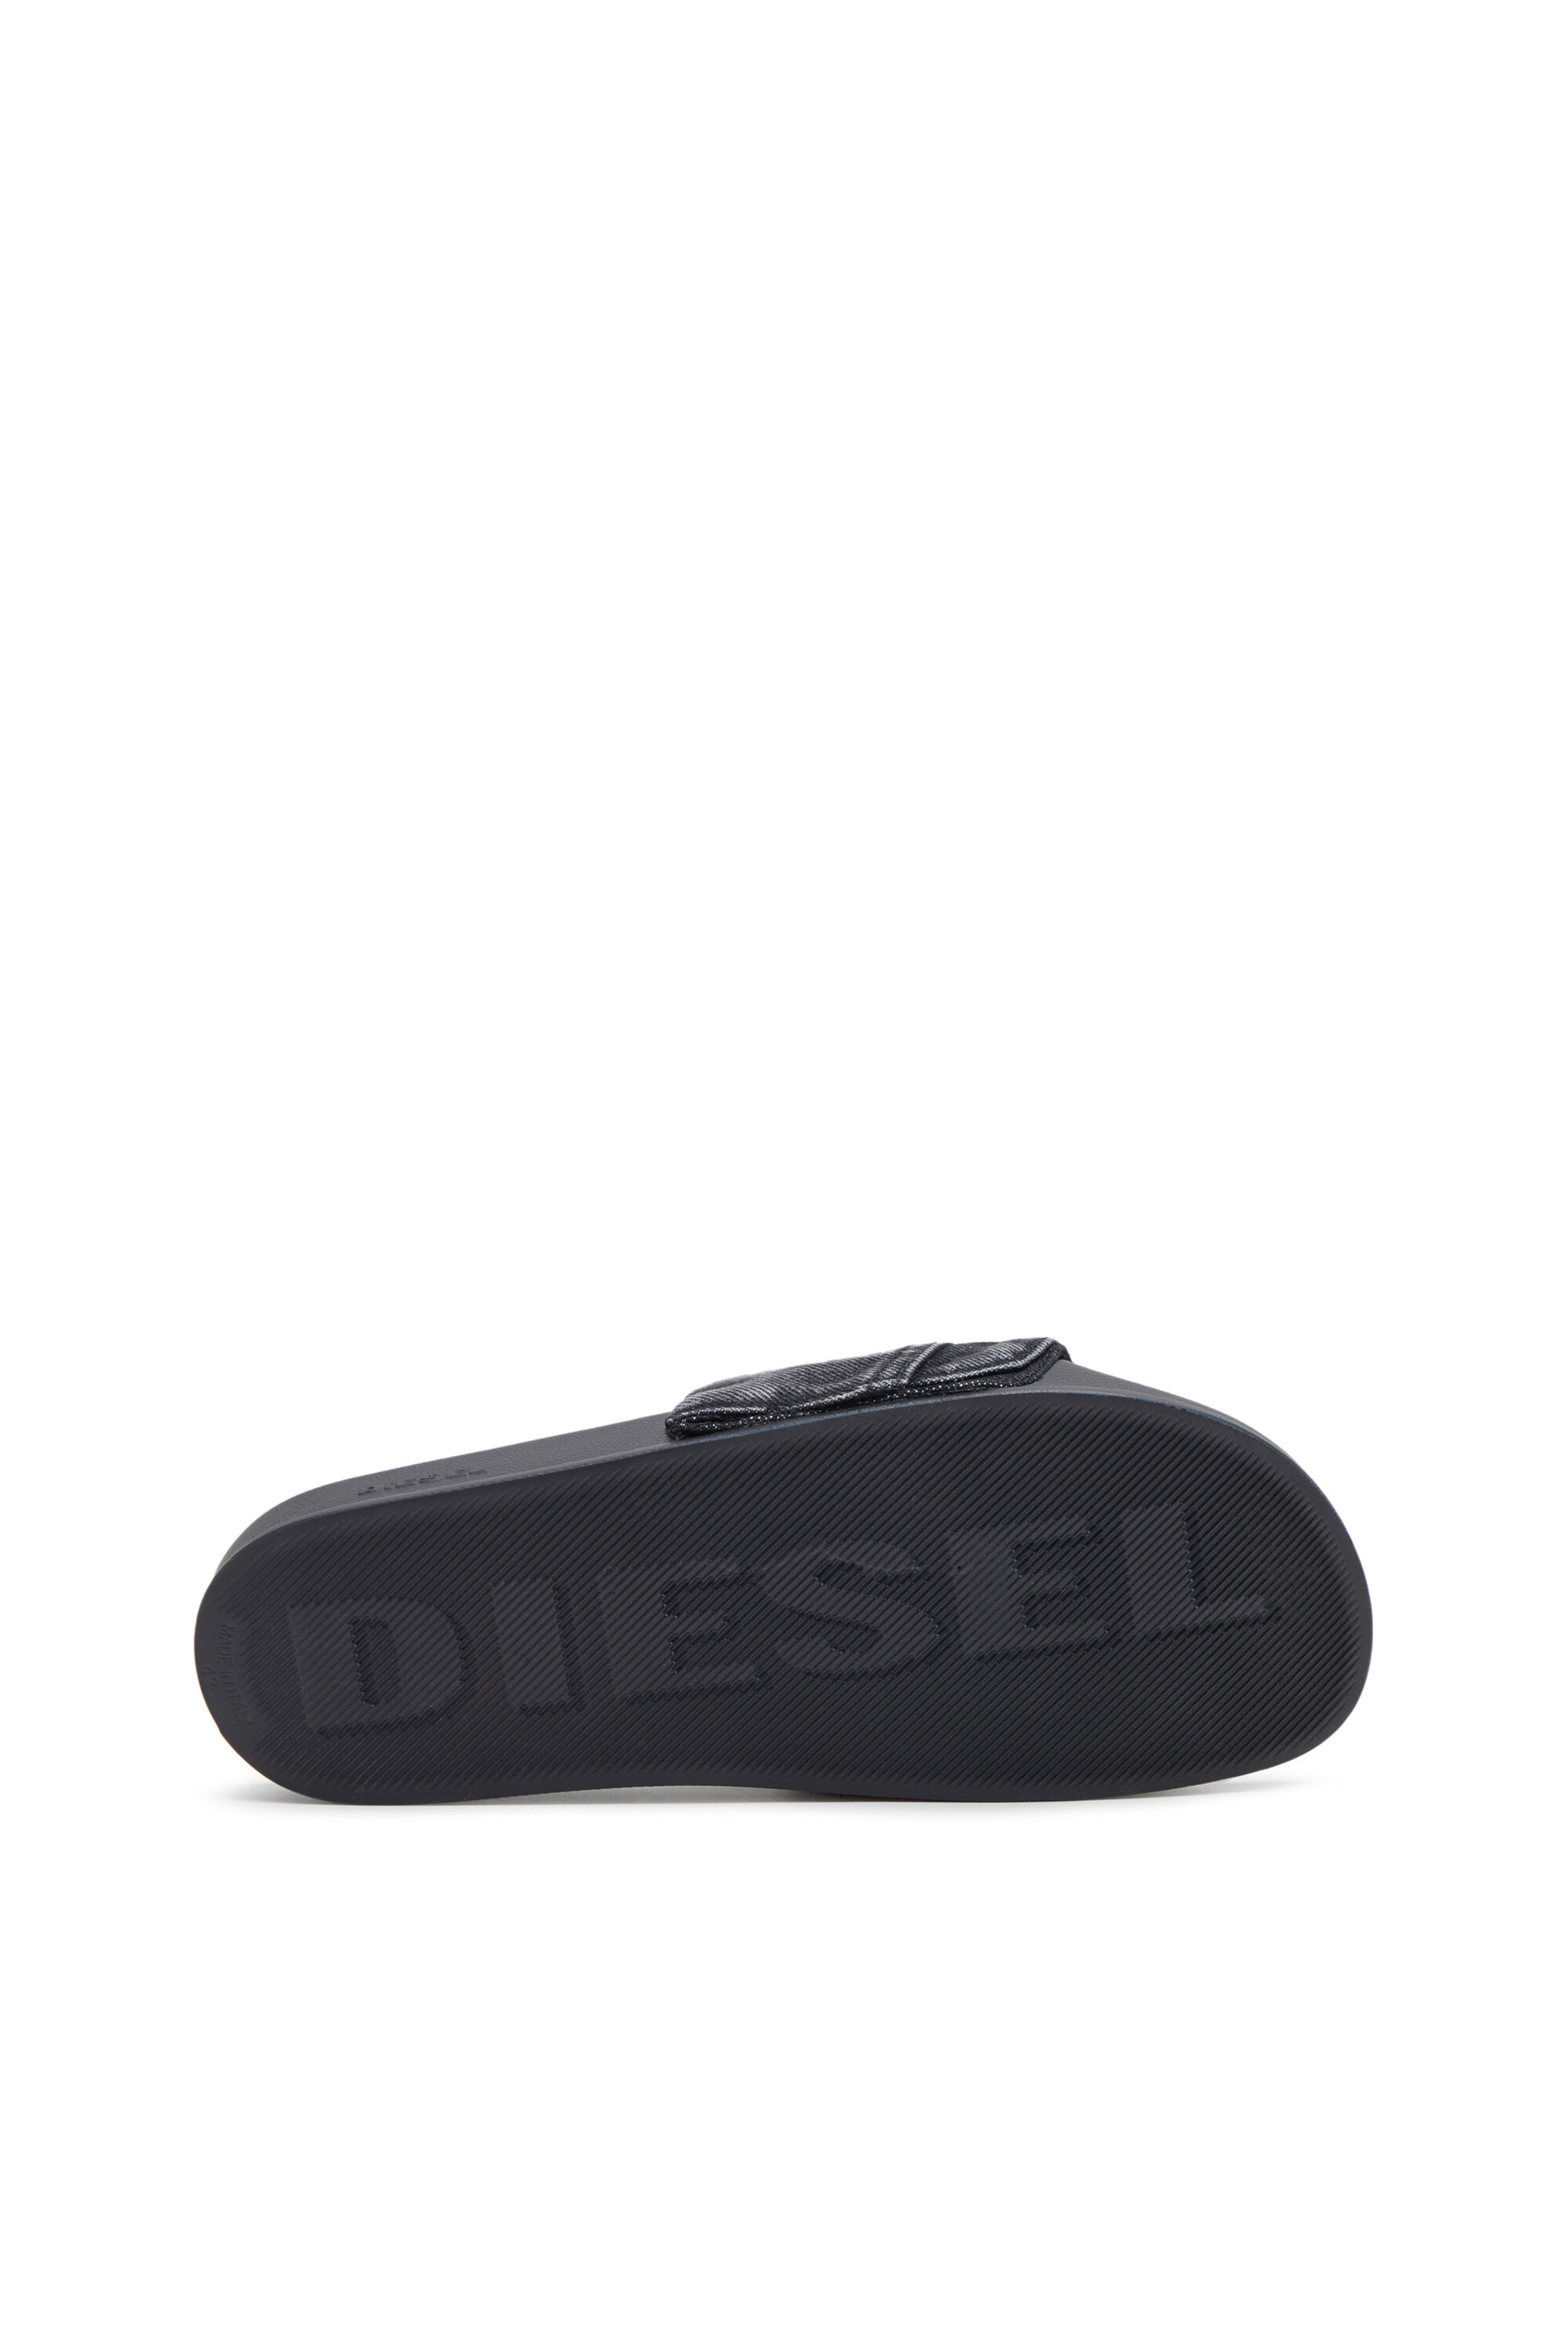 Diesel - SA-MAYEMI PK, Homme Sa-Mayemi PK - Claquettes de piscine en denim avec poches utility in Noir - Image 4